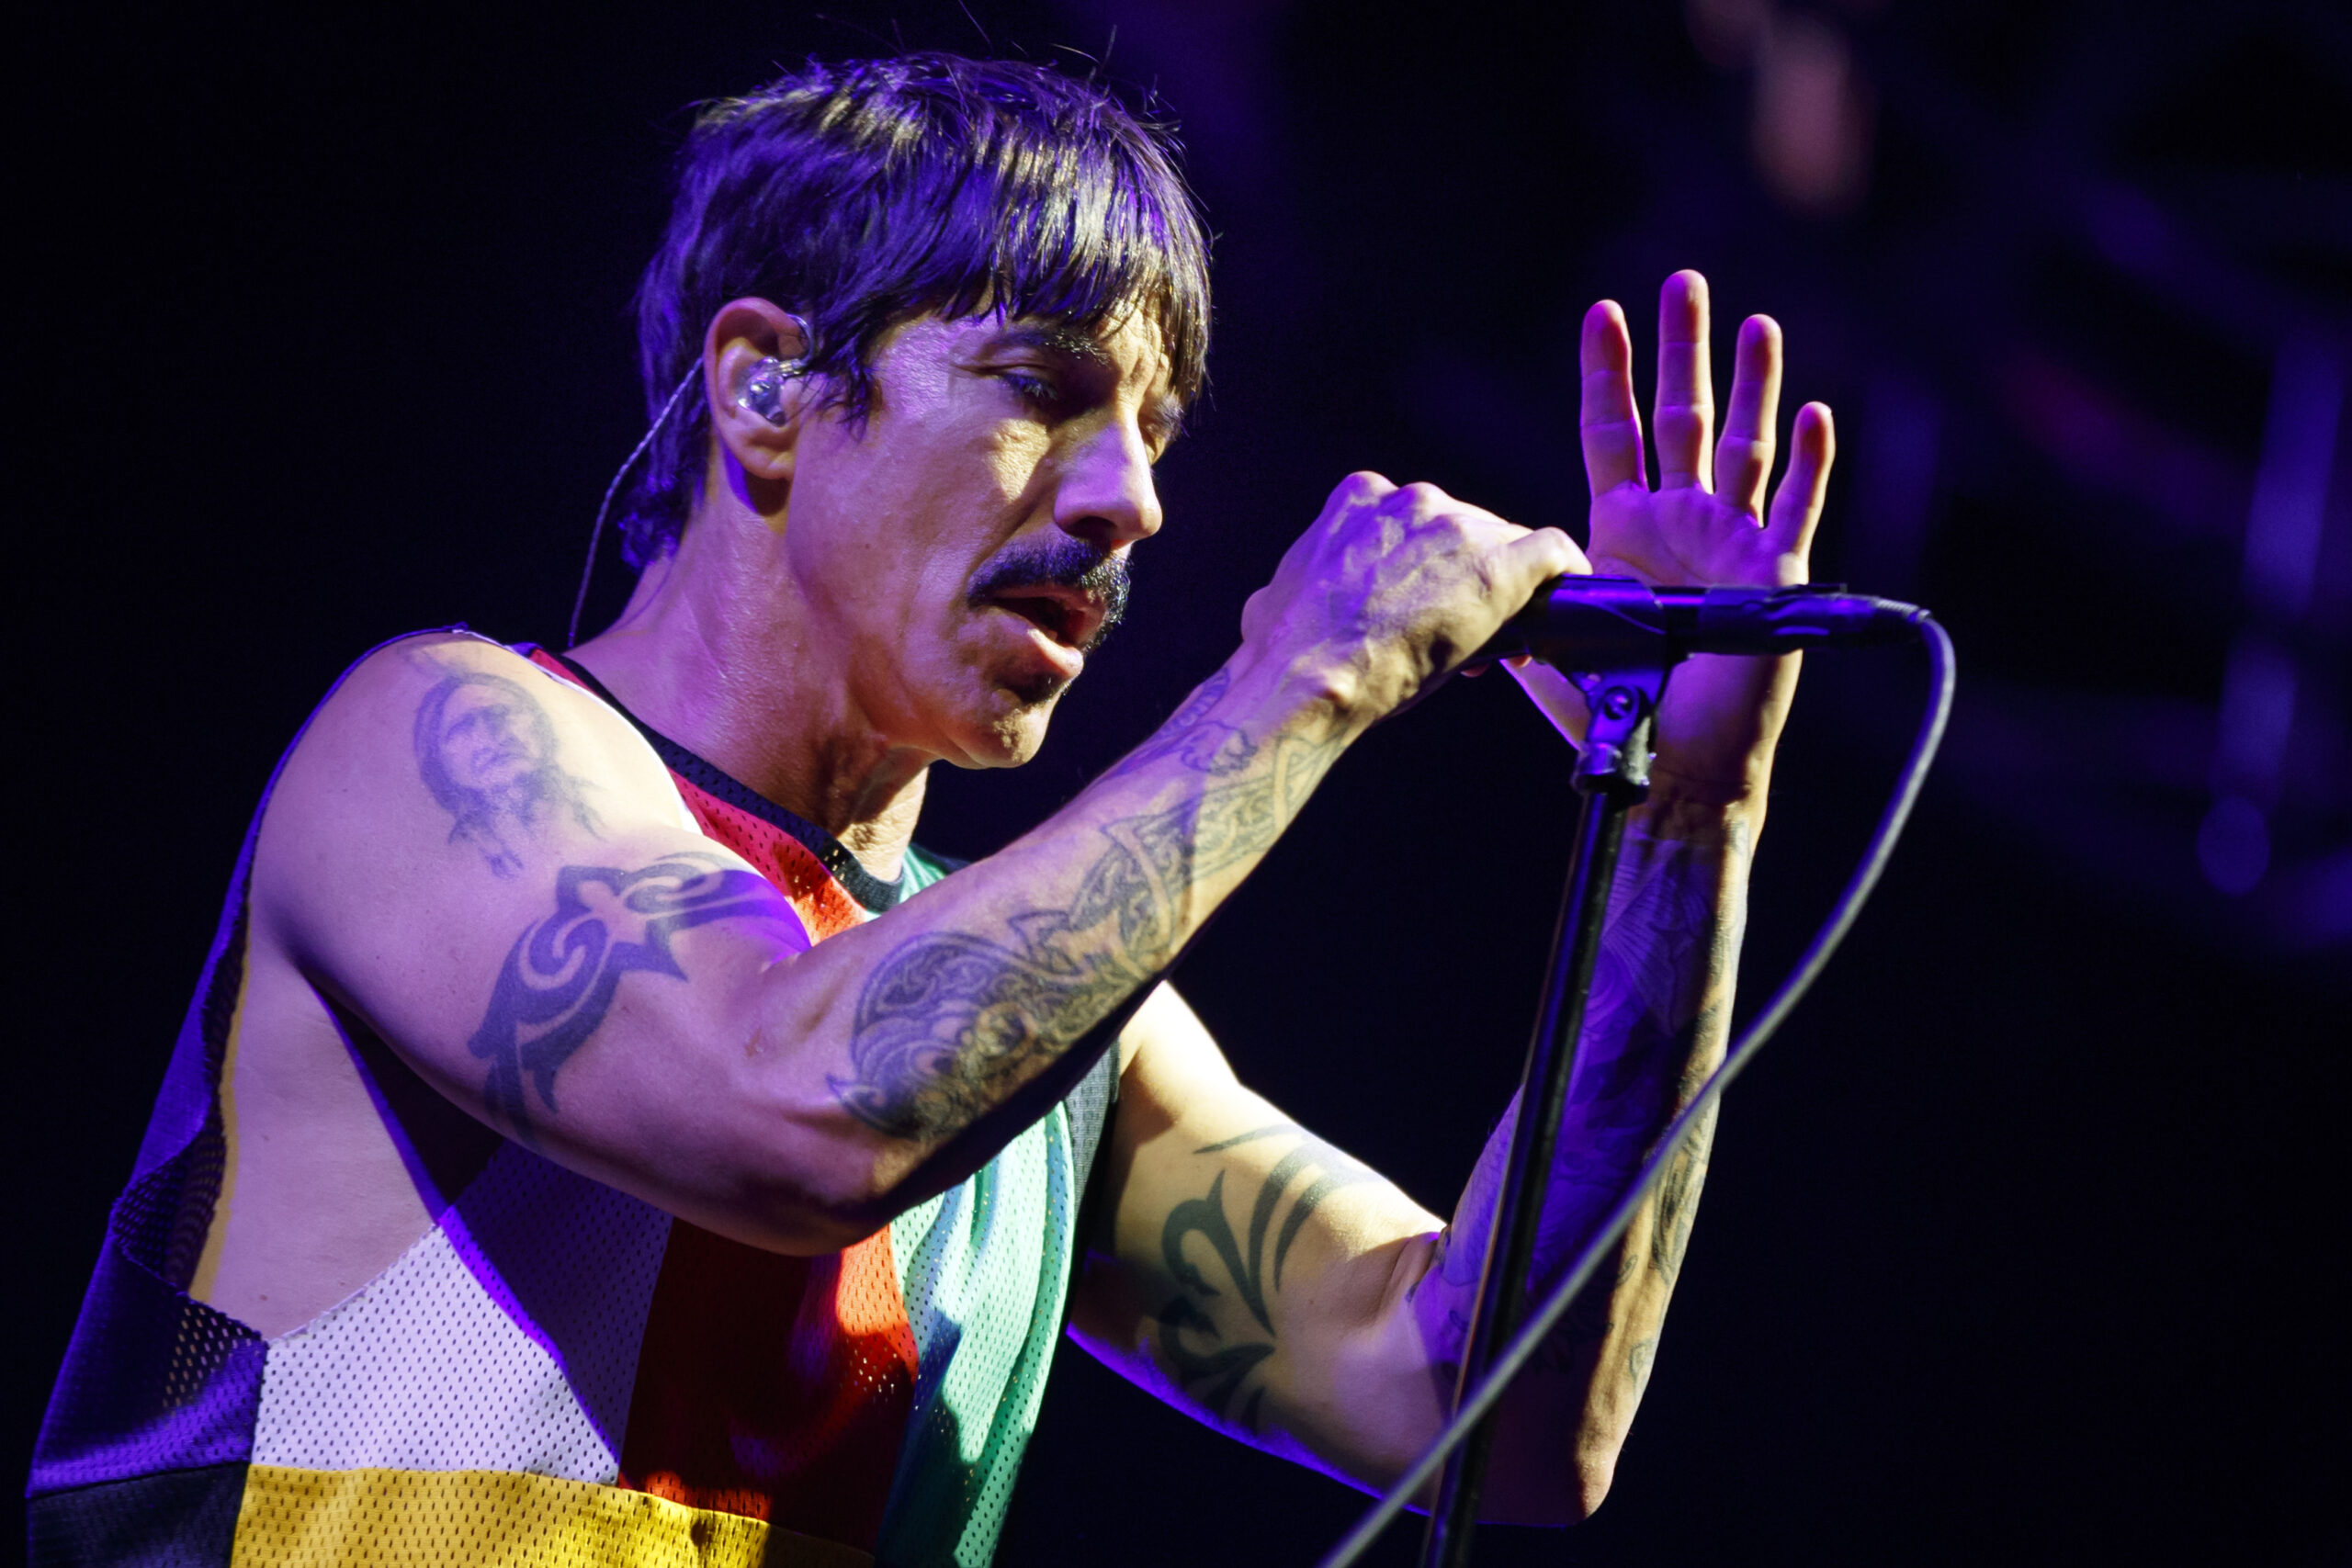 El cantante de Red Hot Chili Peppers tiene una novia 36 años menor que él – Prensa Libre